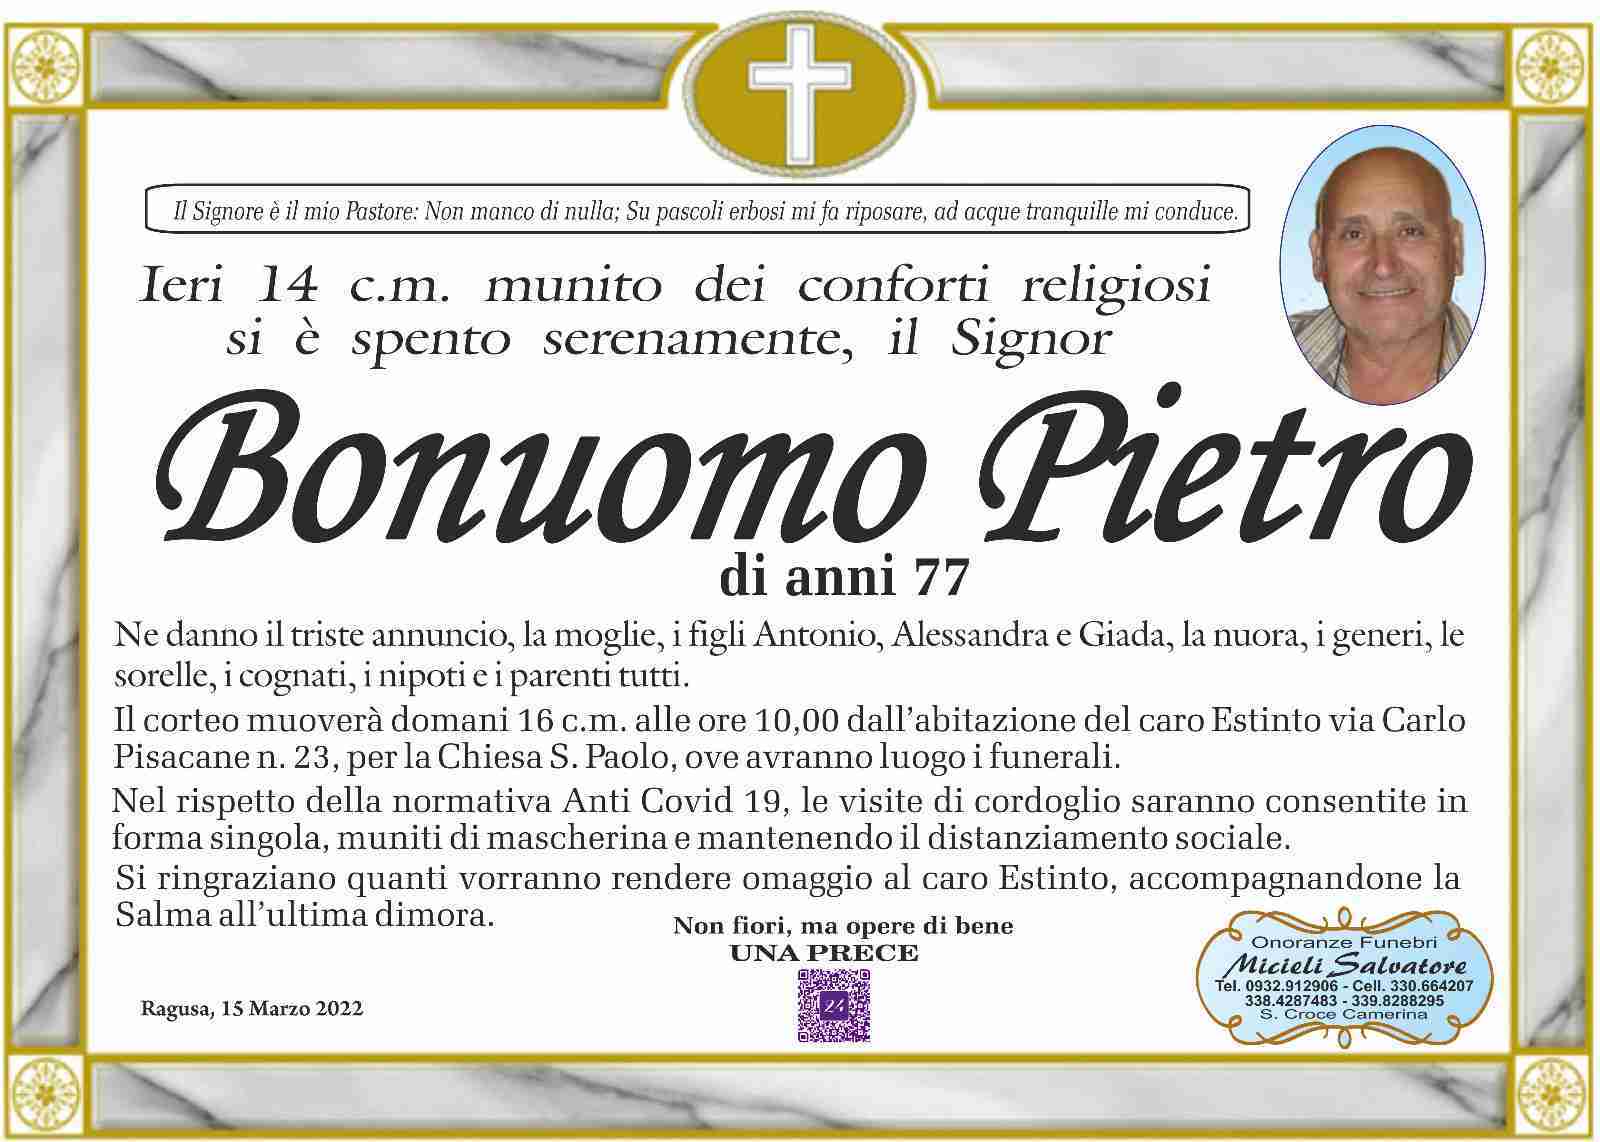 Pietro Bonuomo